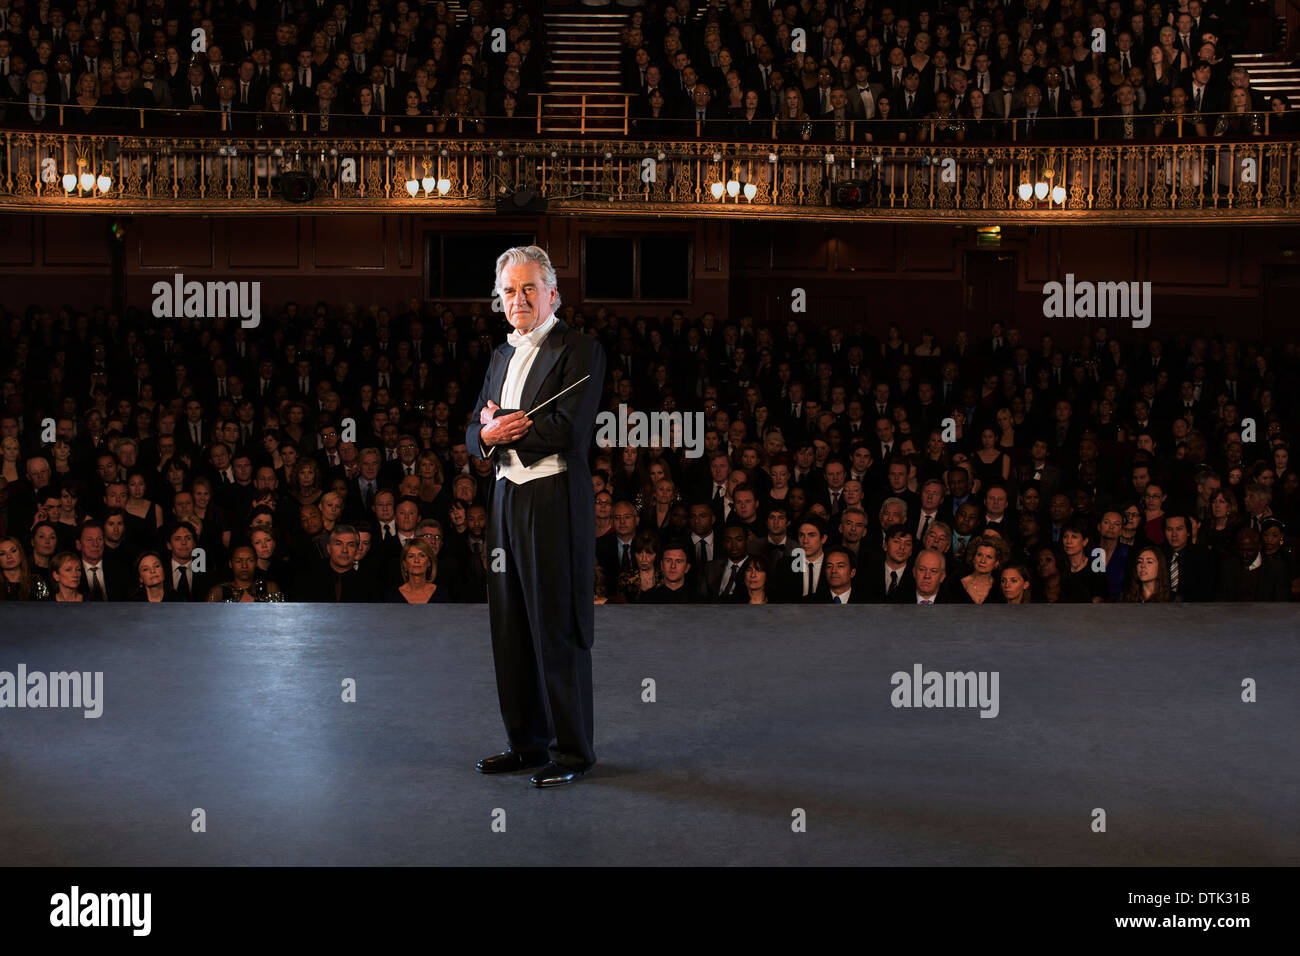 Dirigent, posieren auf der Bühne im theater Stockfoto